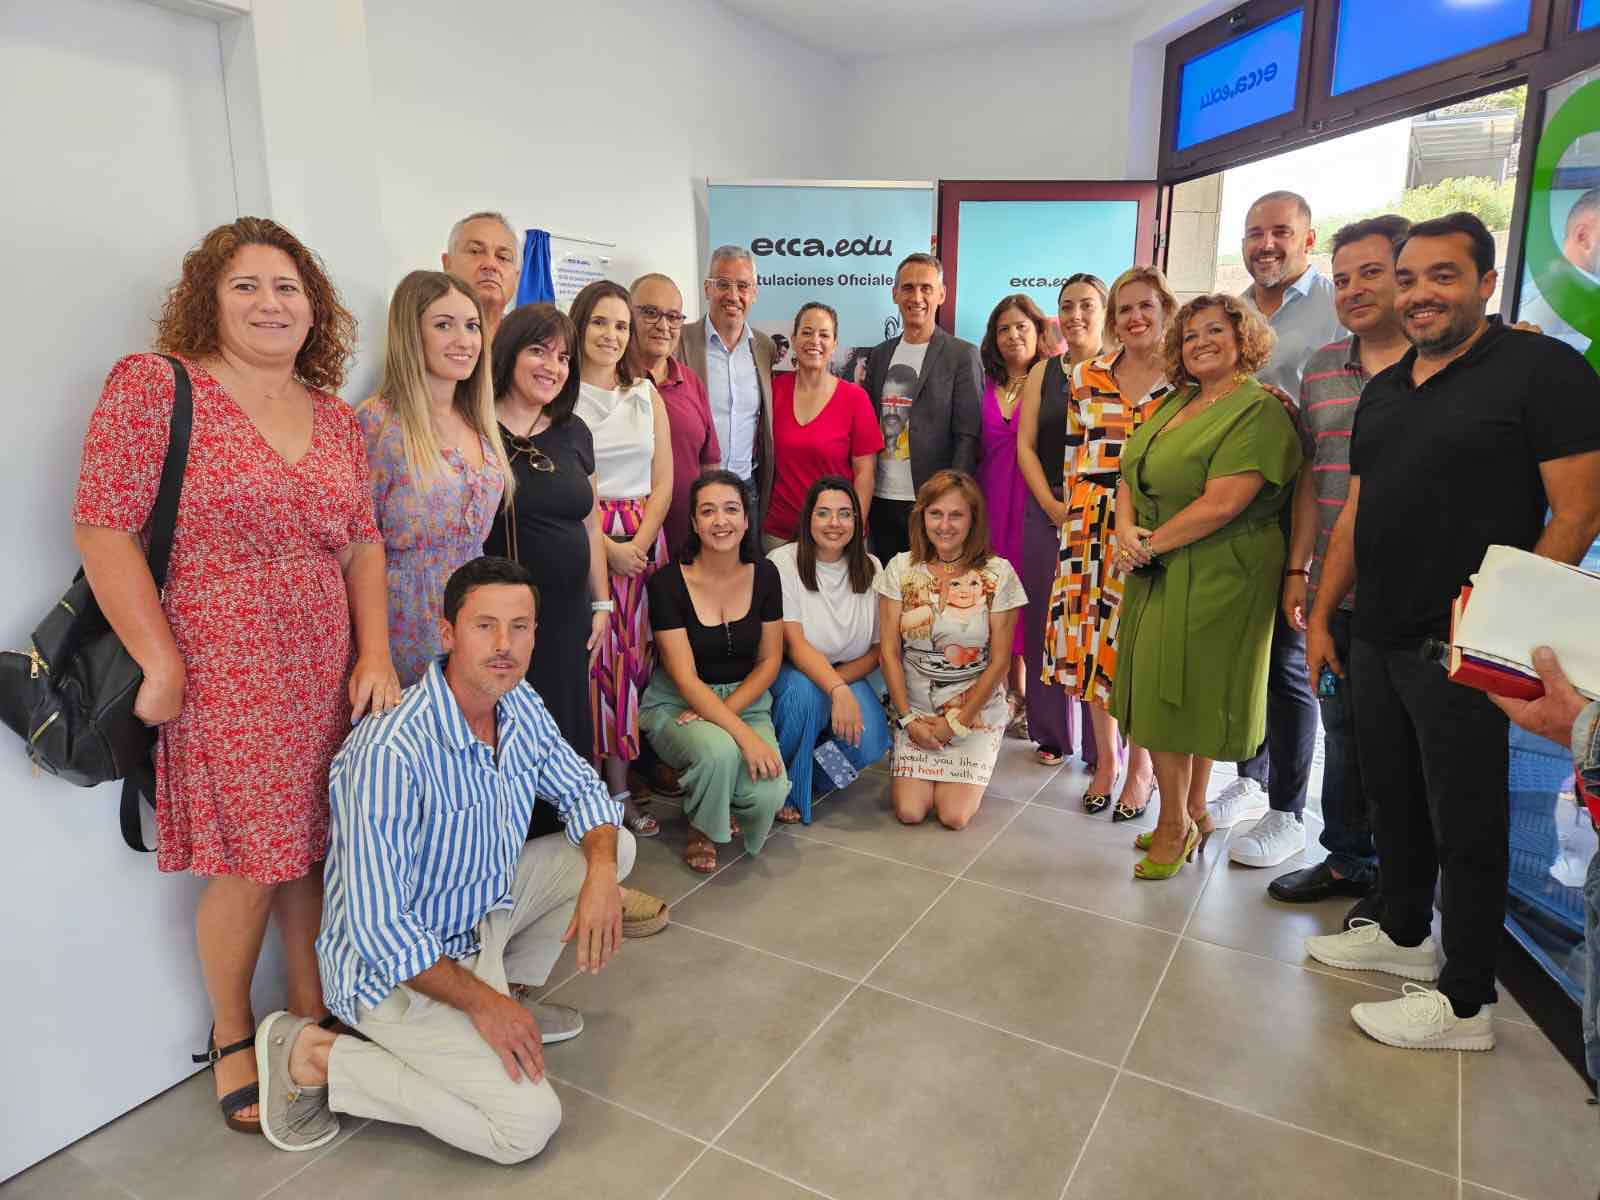 Fundación ecca.edu inauguró ayer, en Los Llanos de Aridane, su nueva sede